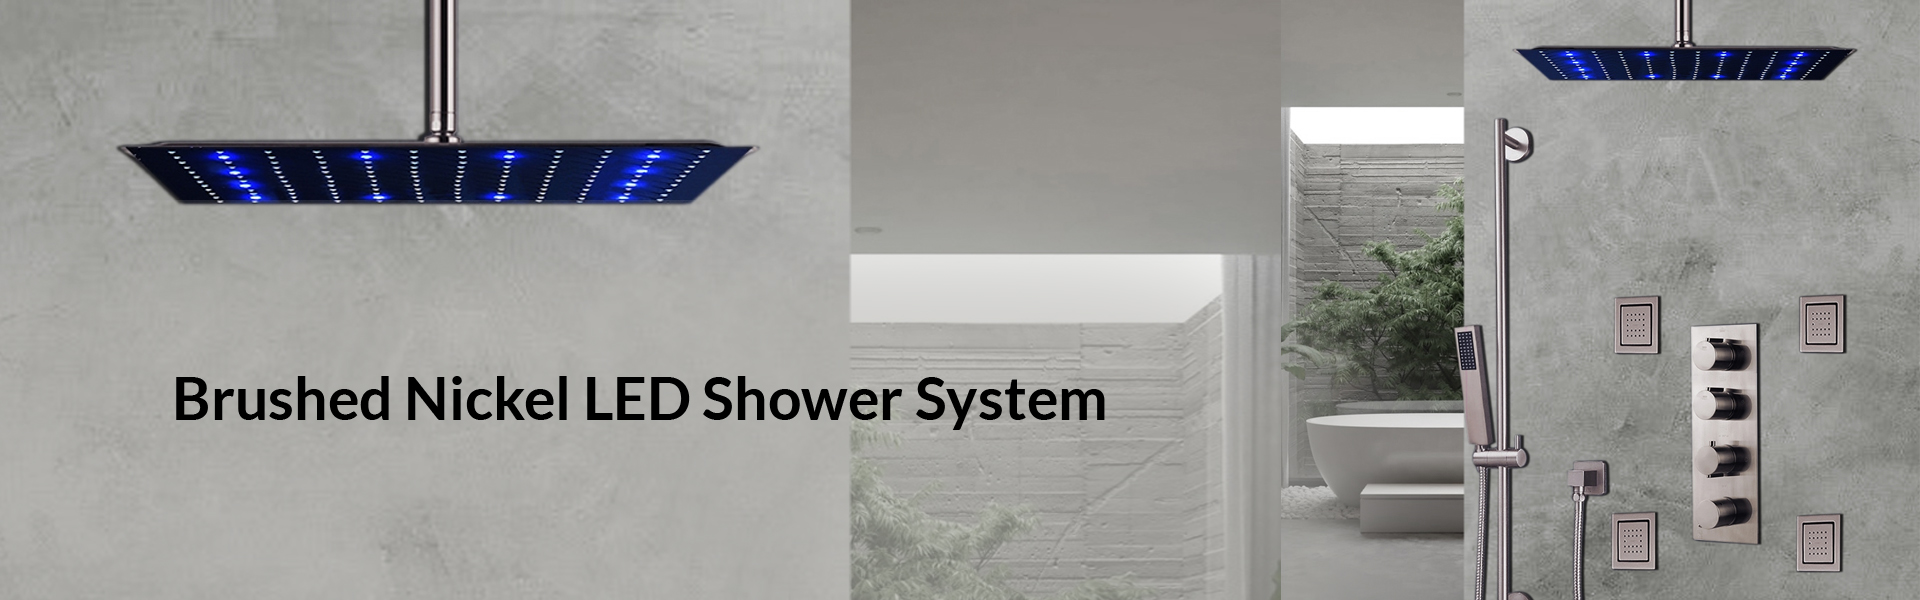 Brushed Nickel LED Shower System